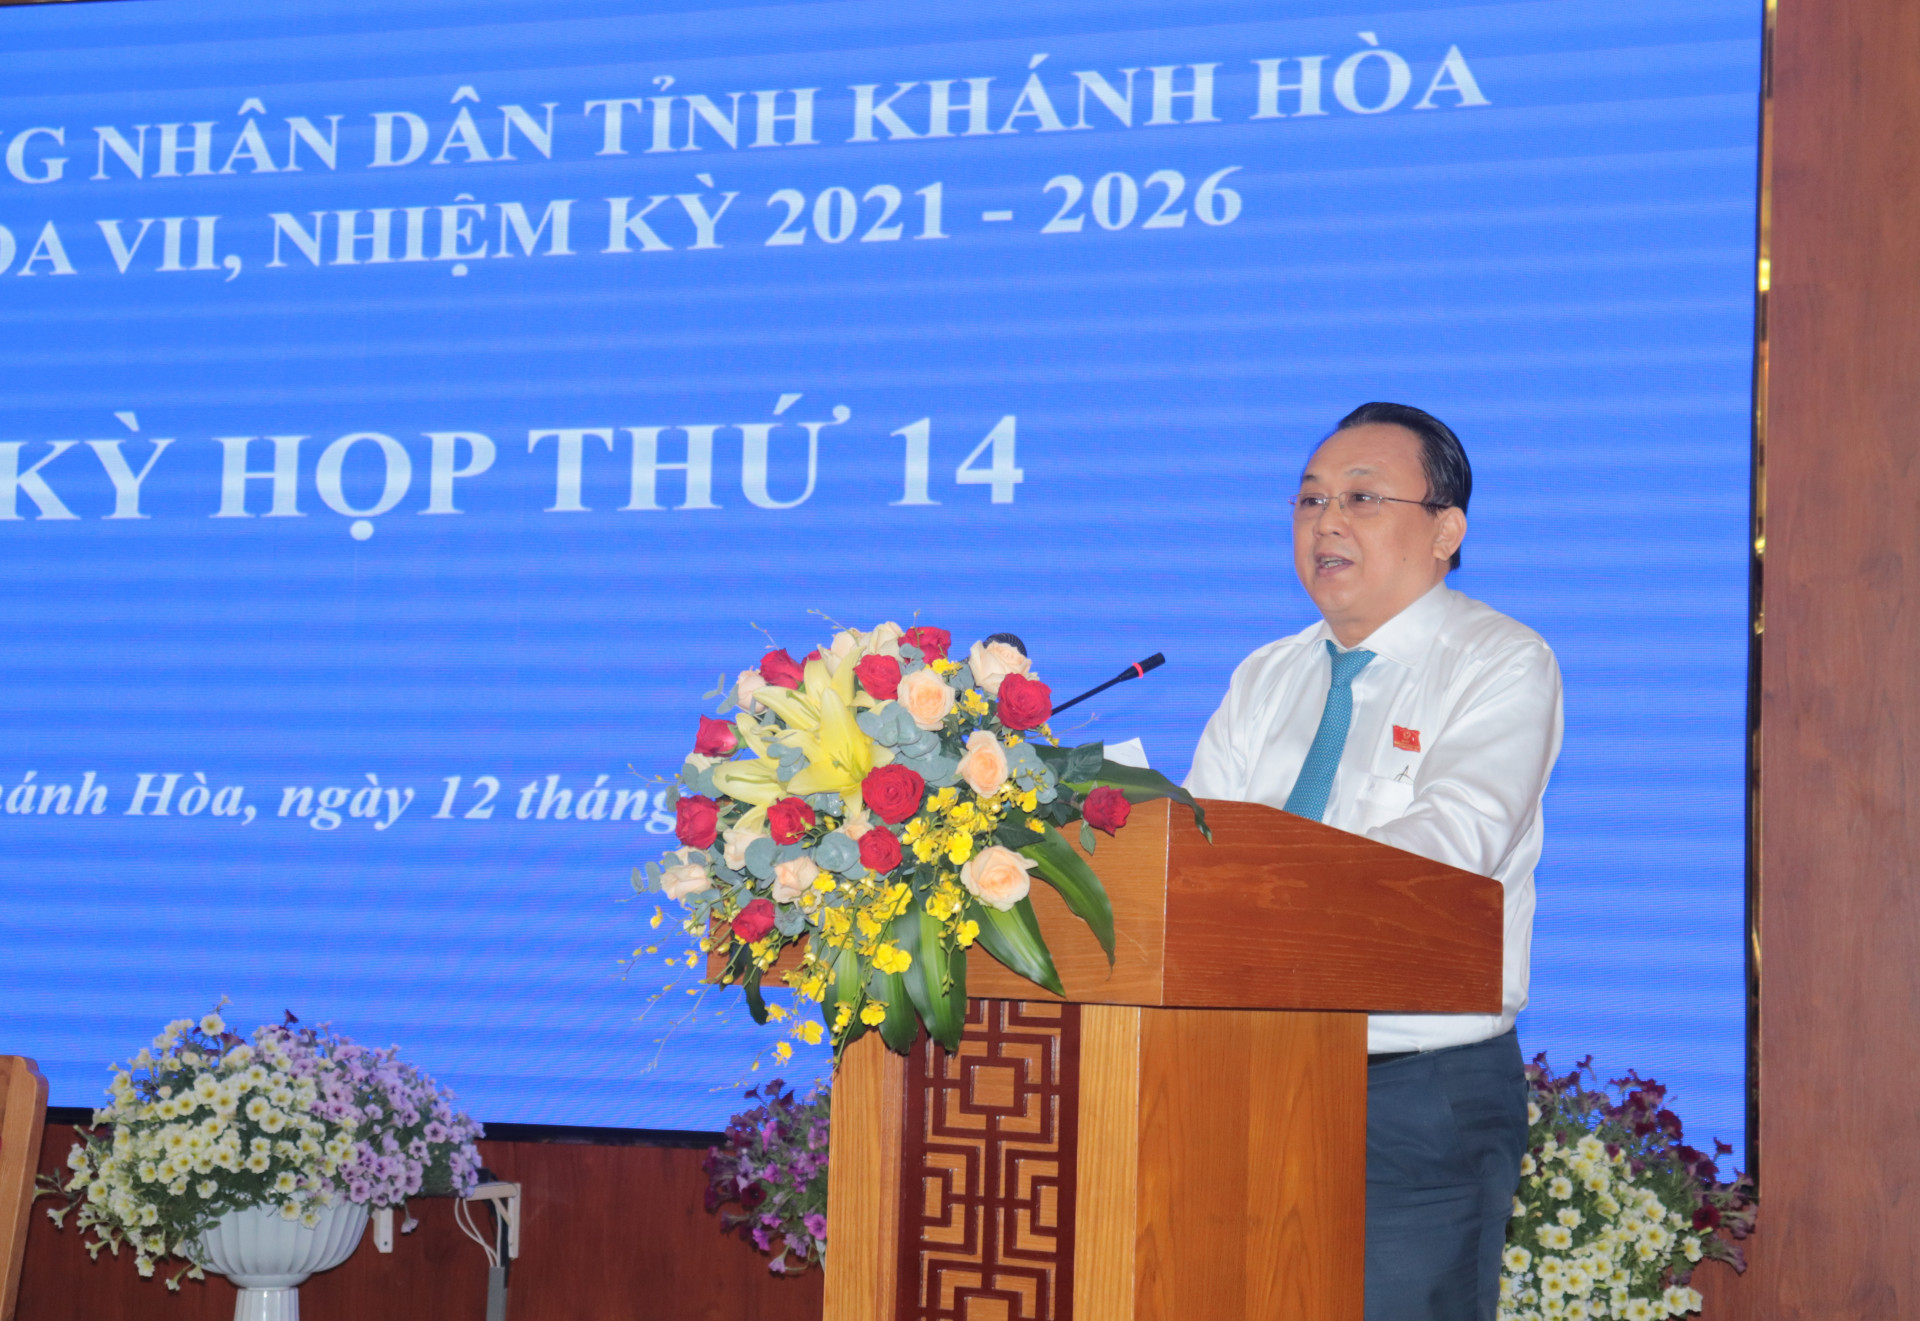 Ông Lê Hữu Hoàng - Phó Chủ tịch Thường trực UBND tỉnh trình bài báo cáo của UBND tỉnh